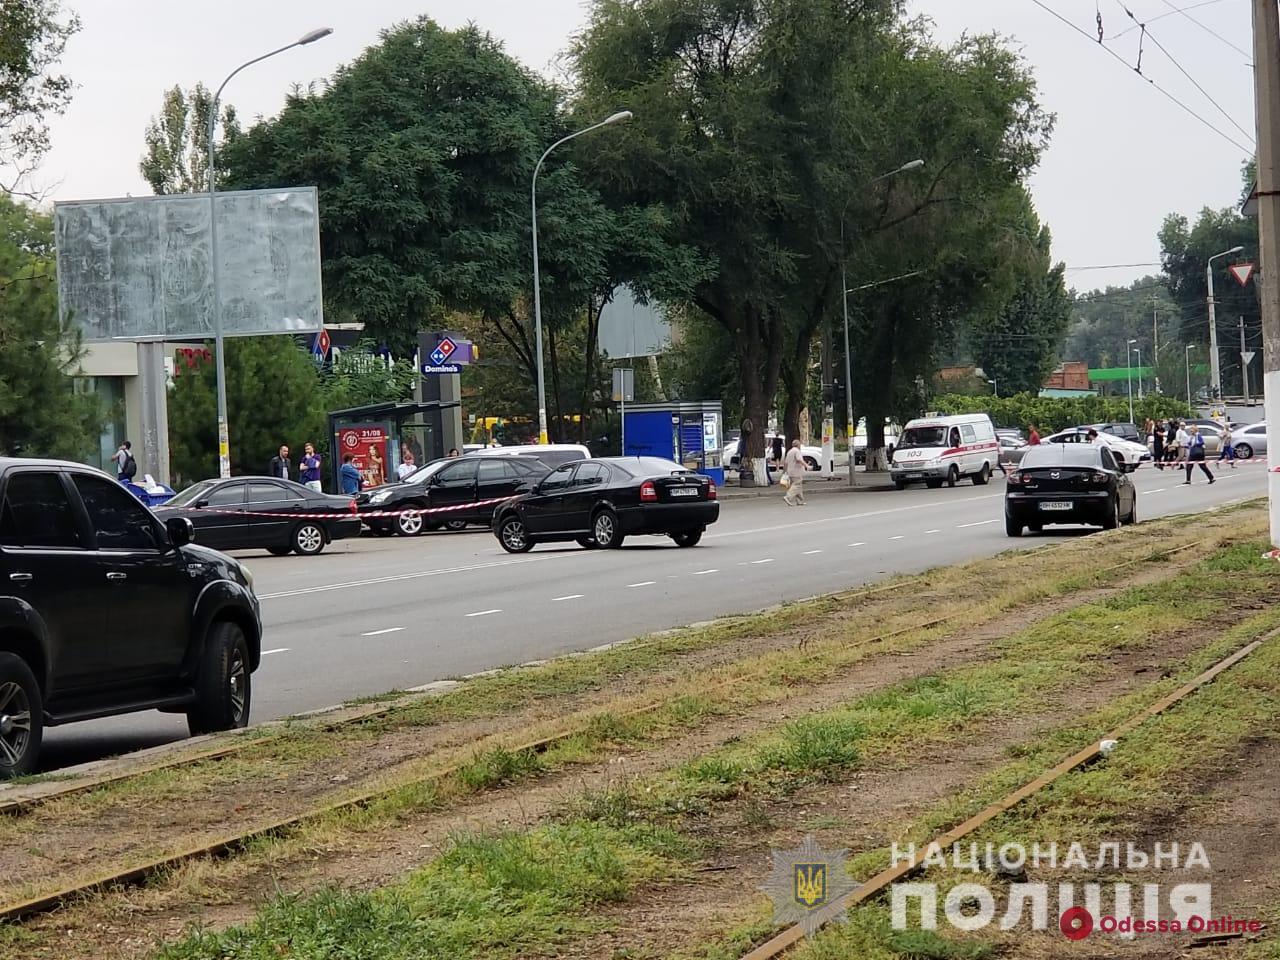 Одесса: под автомобиль ректора МГУ подложили взрывное устройство (обновлено)